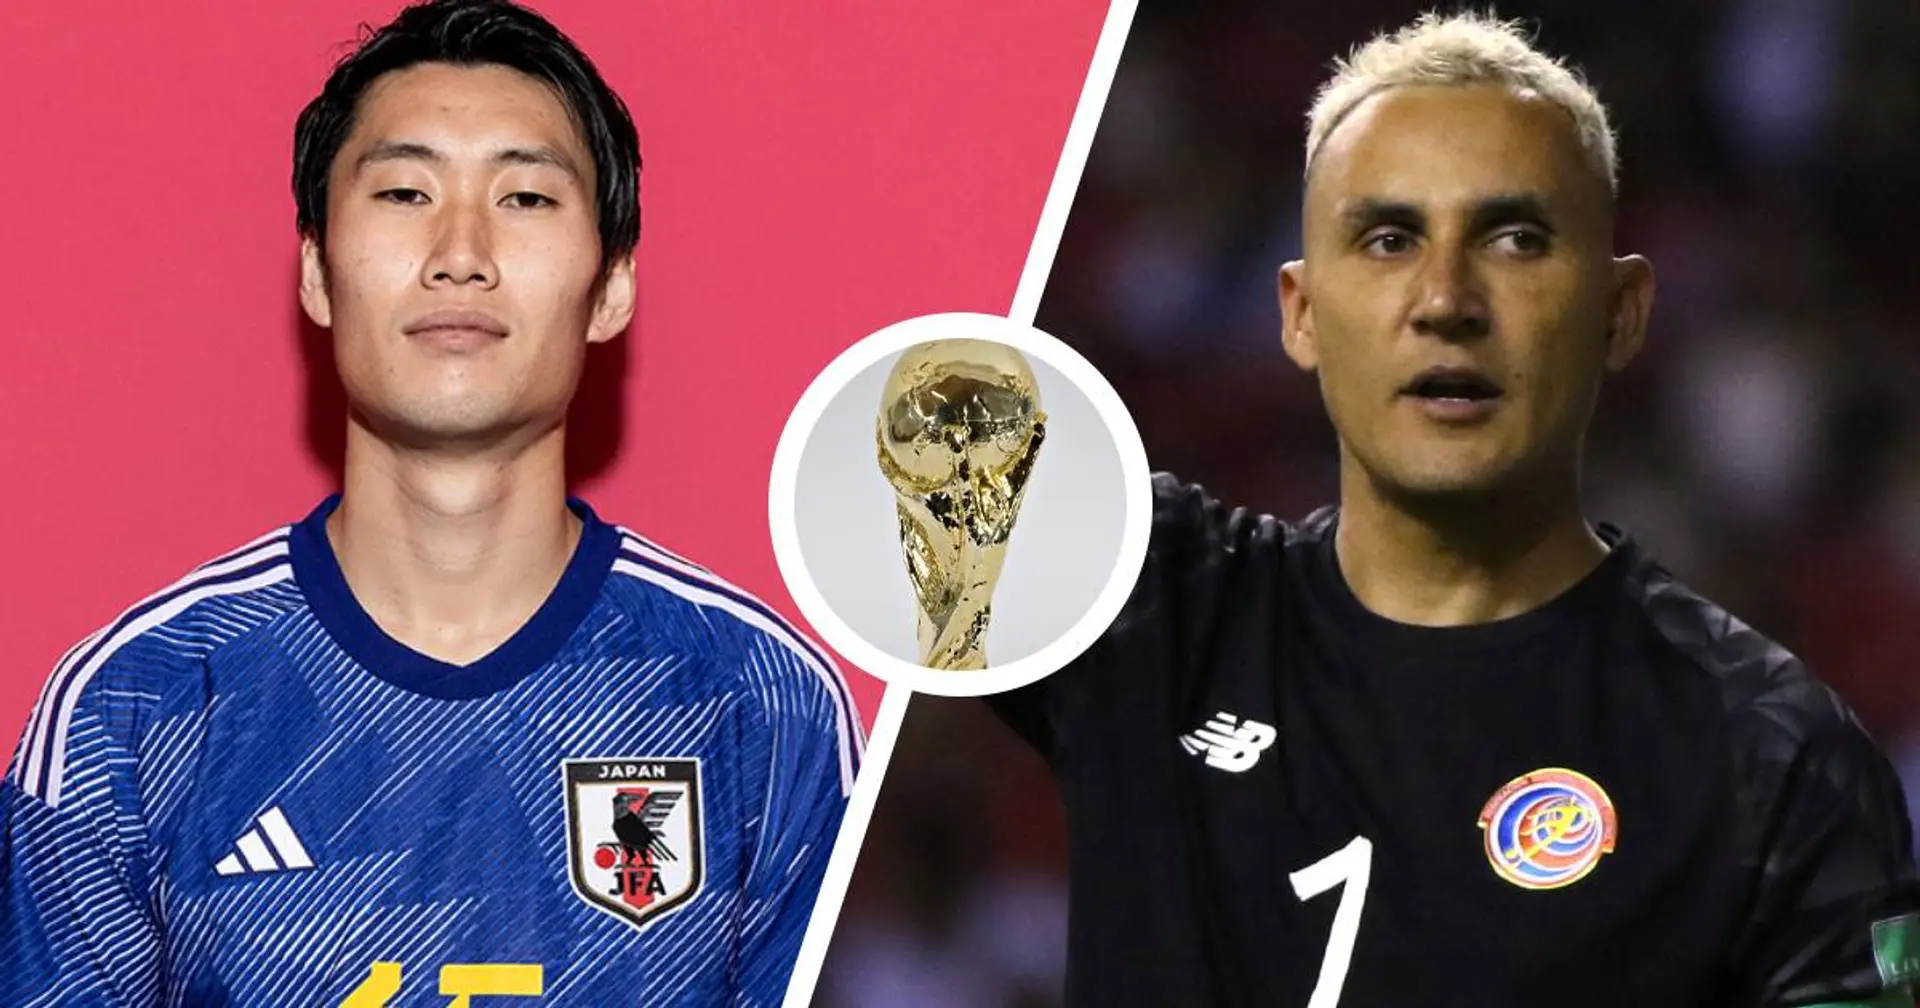 Giappone vs Costa Rica: le formazioni ufficiali delle squadre per la partita della Coppa del Mondo Qatar 2022